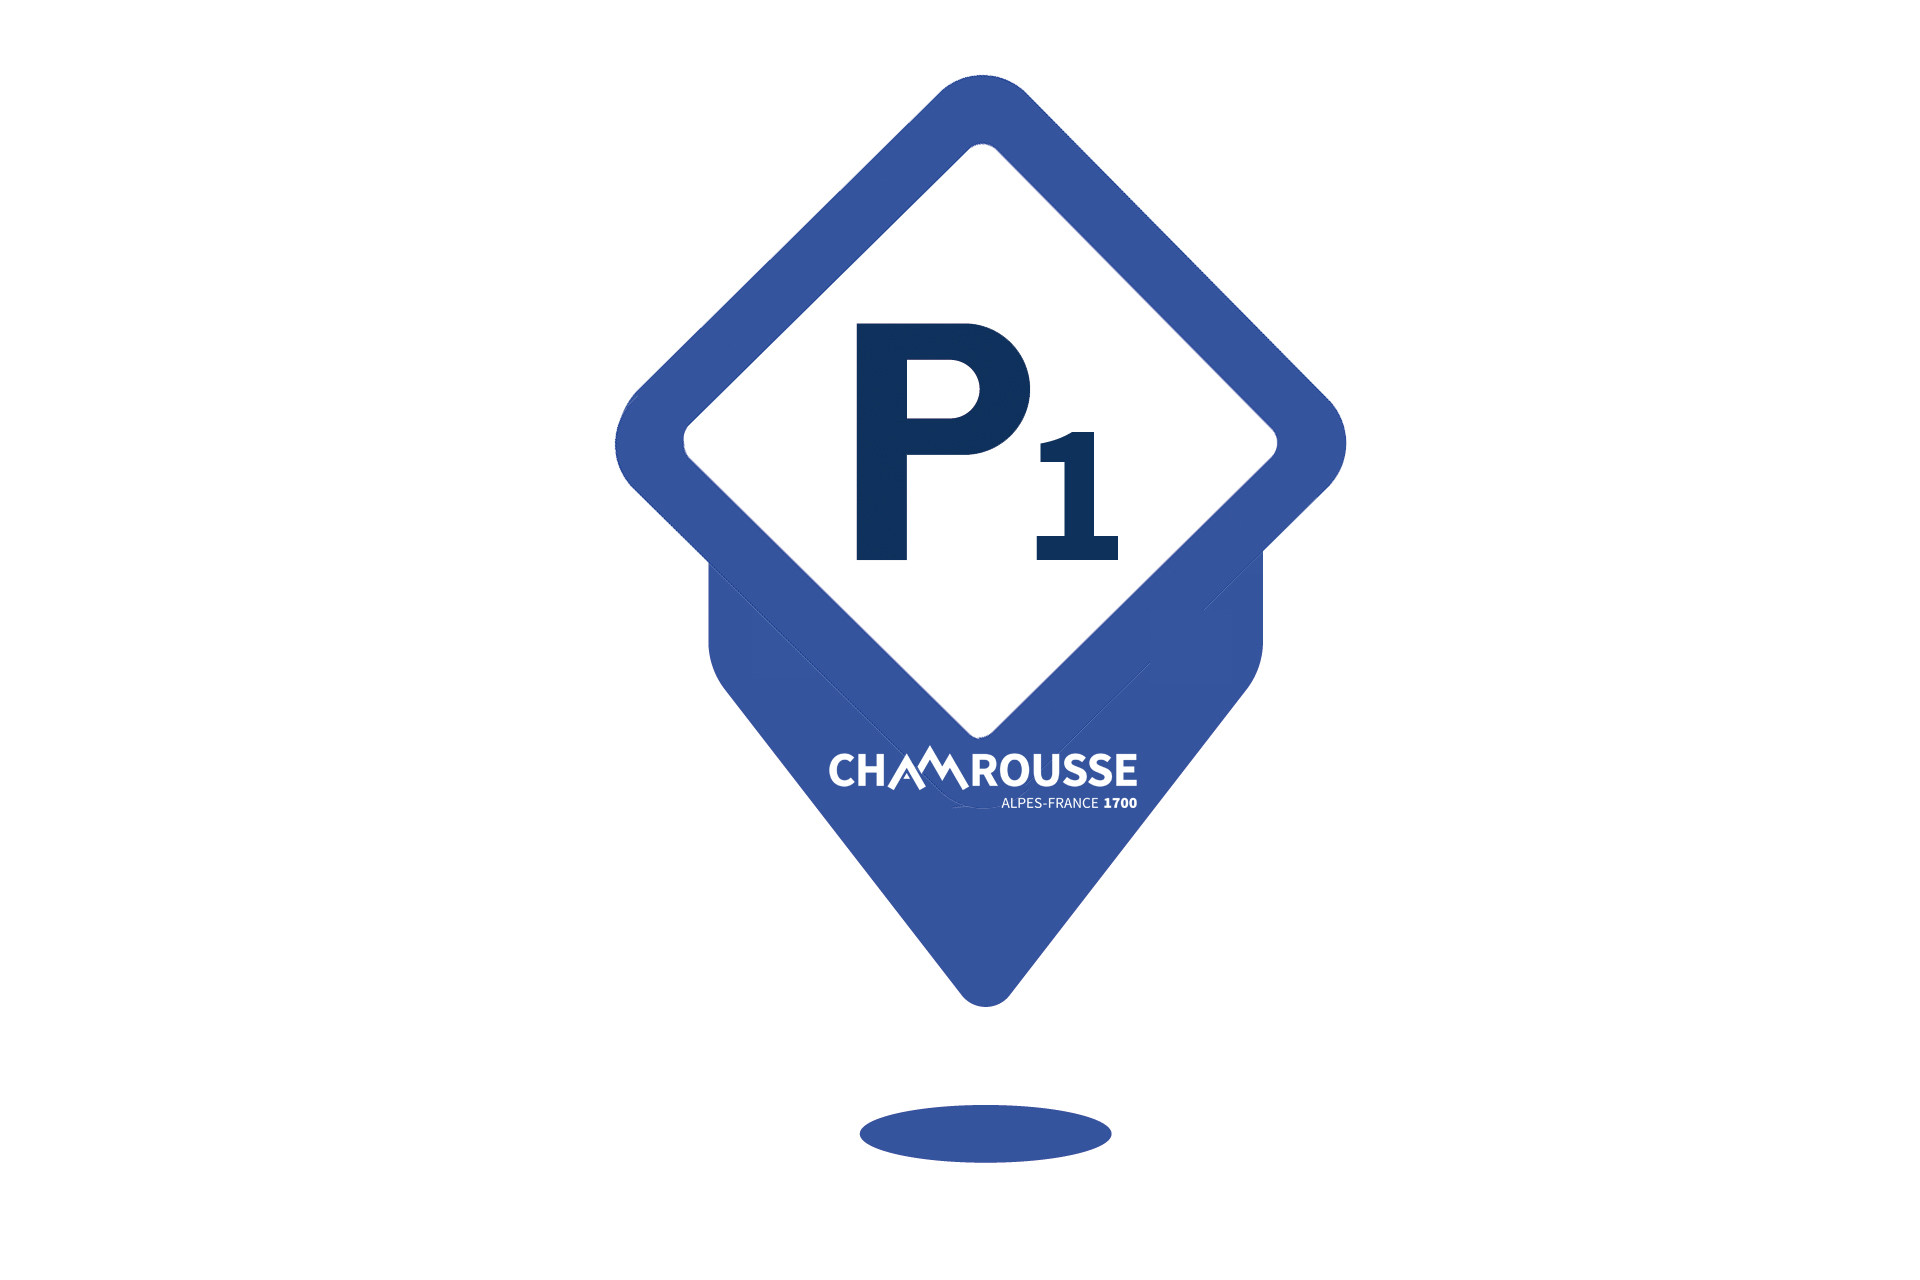 P1 car park Chamrousse